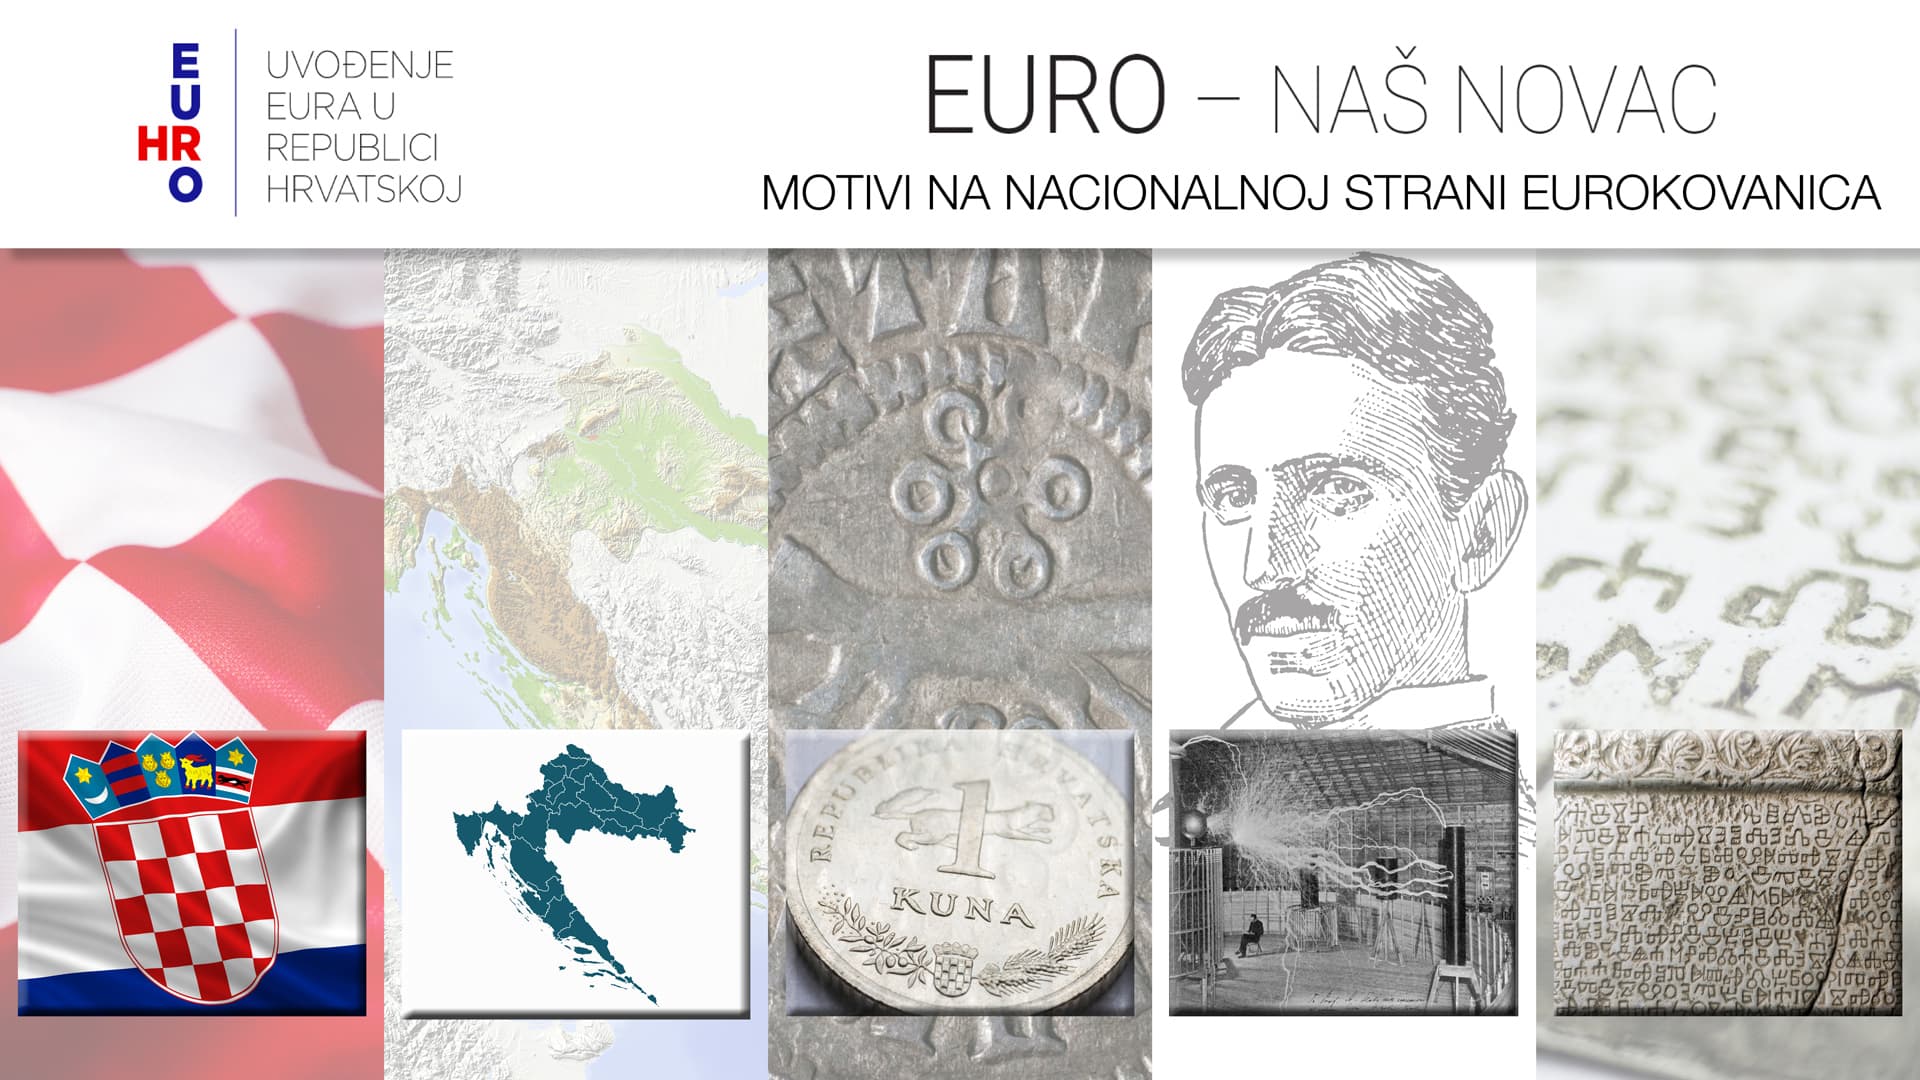 Šahovnica, geografska karta Hrvatske, kuna, glagoljica i Nikola Tesla – predloženi motivi za hrvatsku stranu eurokovanica